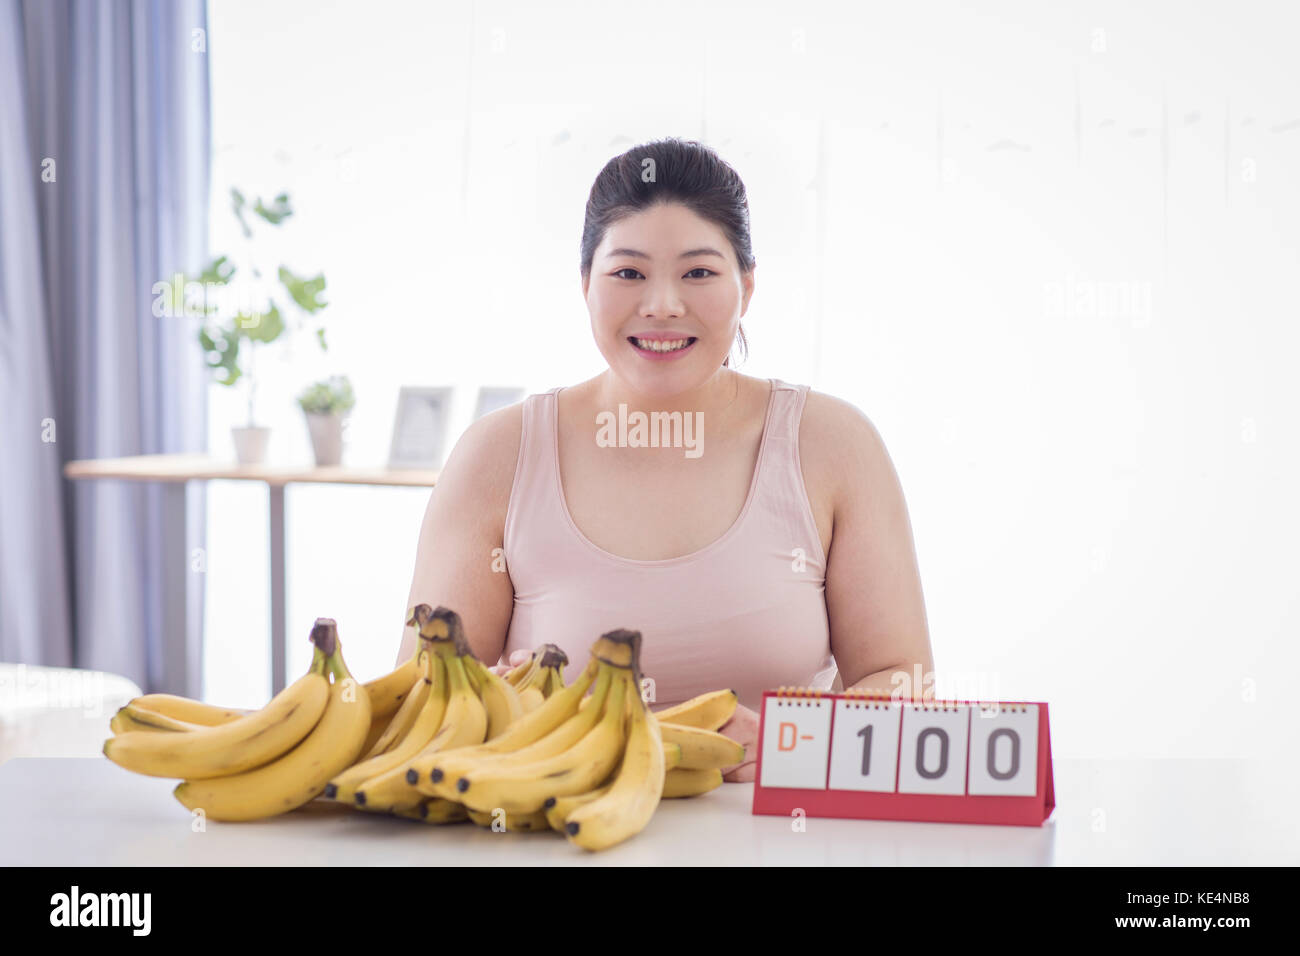 Portrait of young smiling woman fat de régime avec la banane Banque D'Images